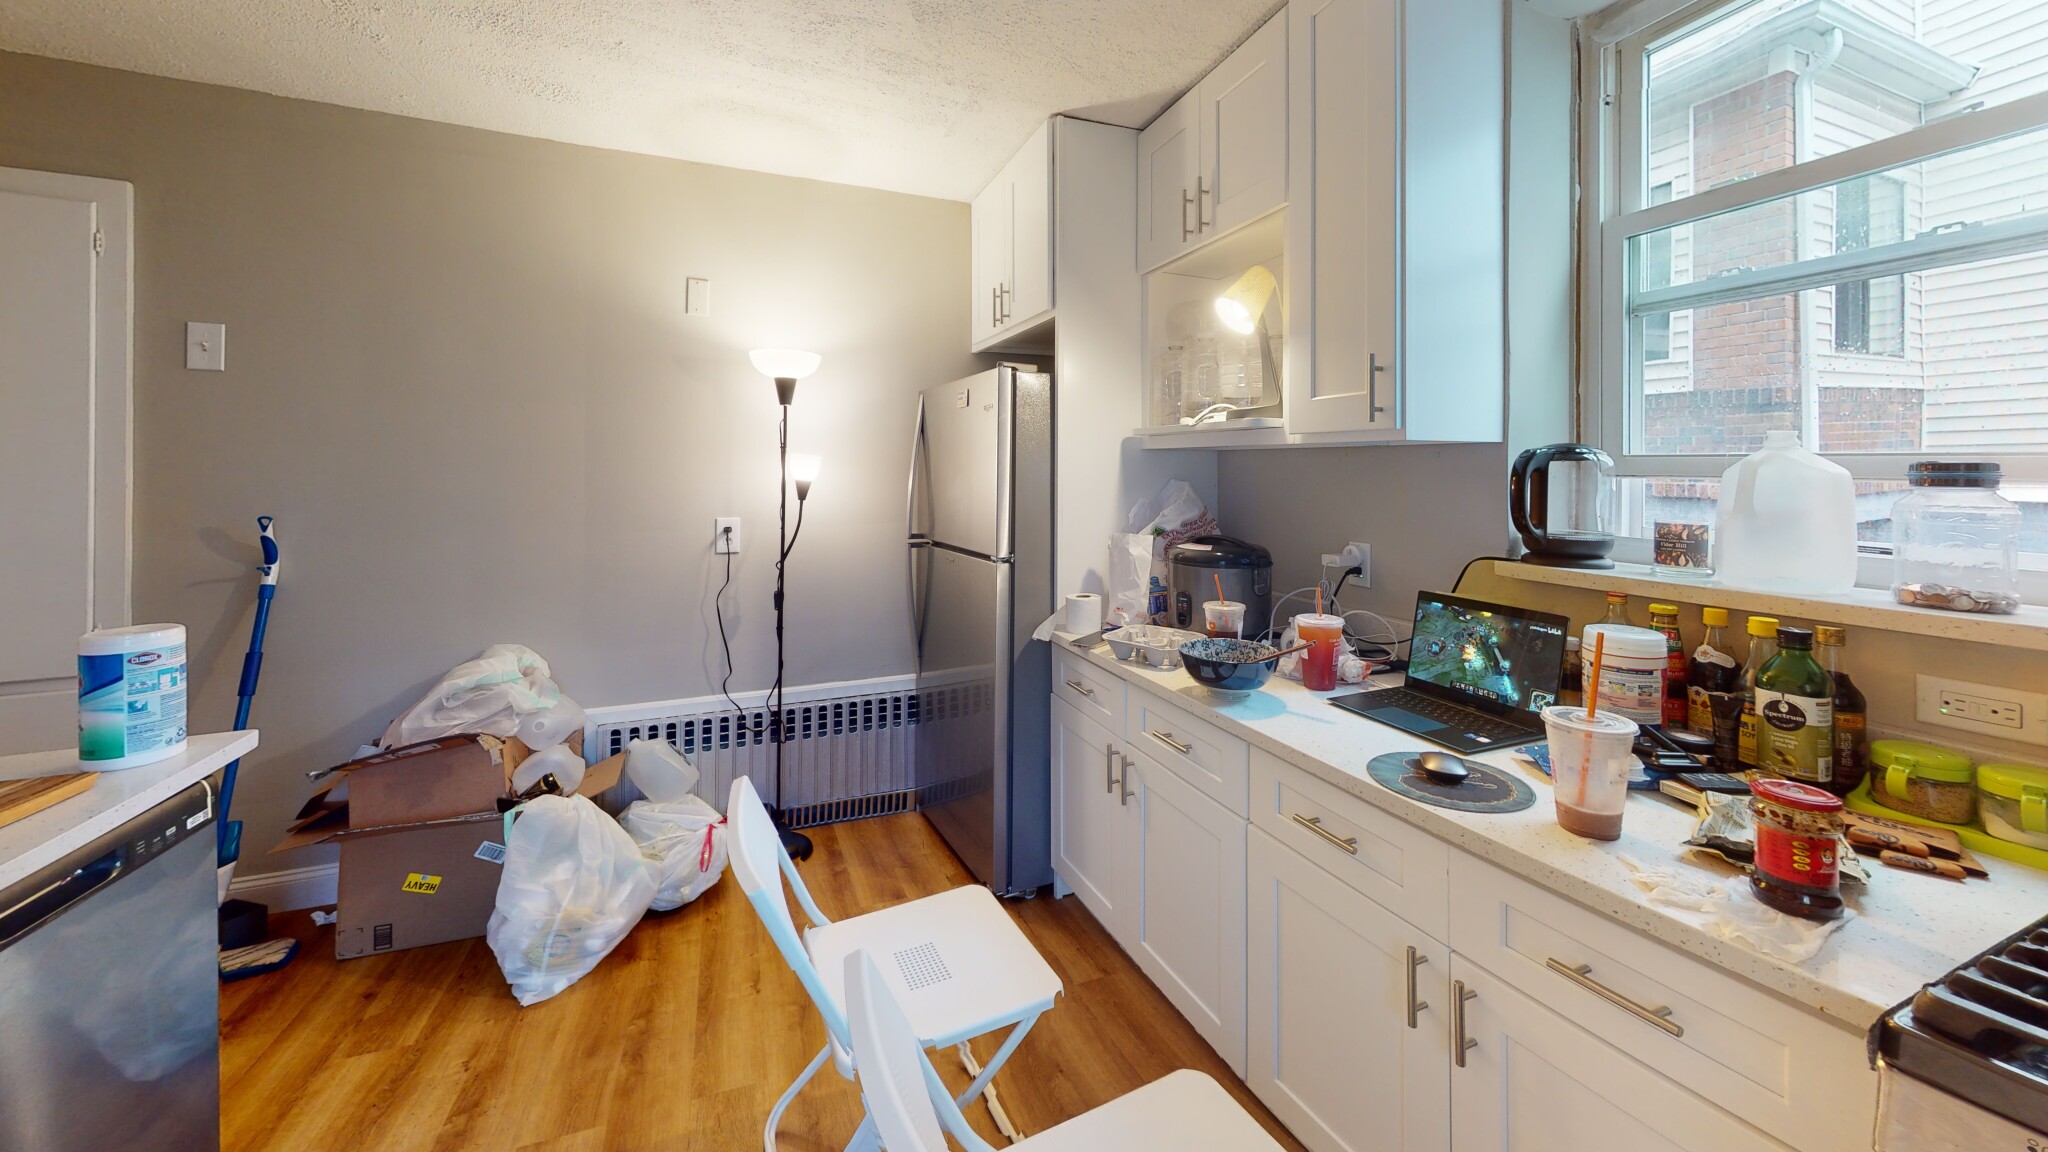 Photos of apartment on Warren St.,Boston MA 02135